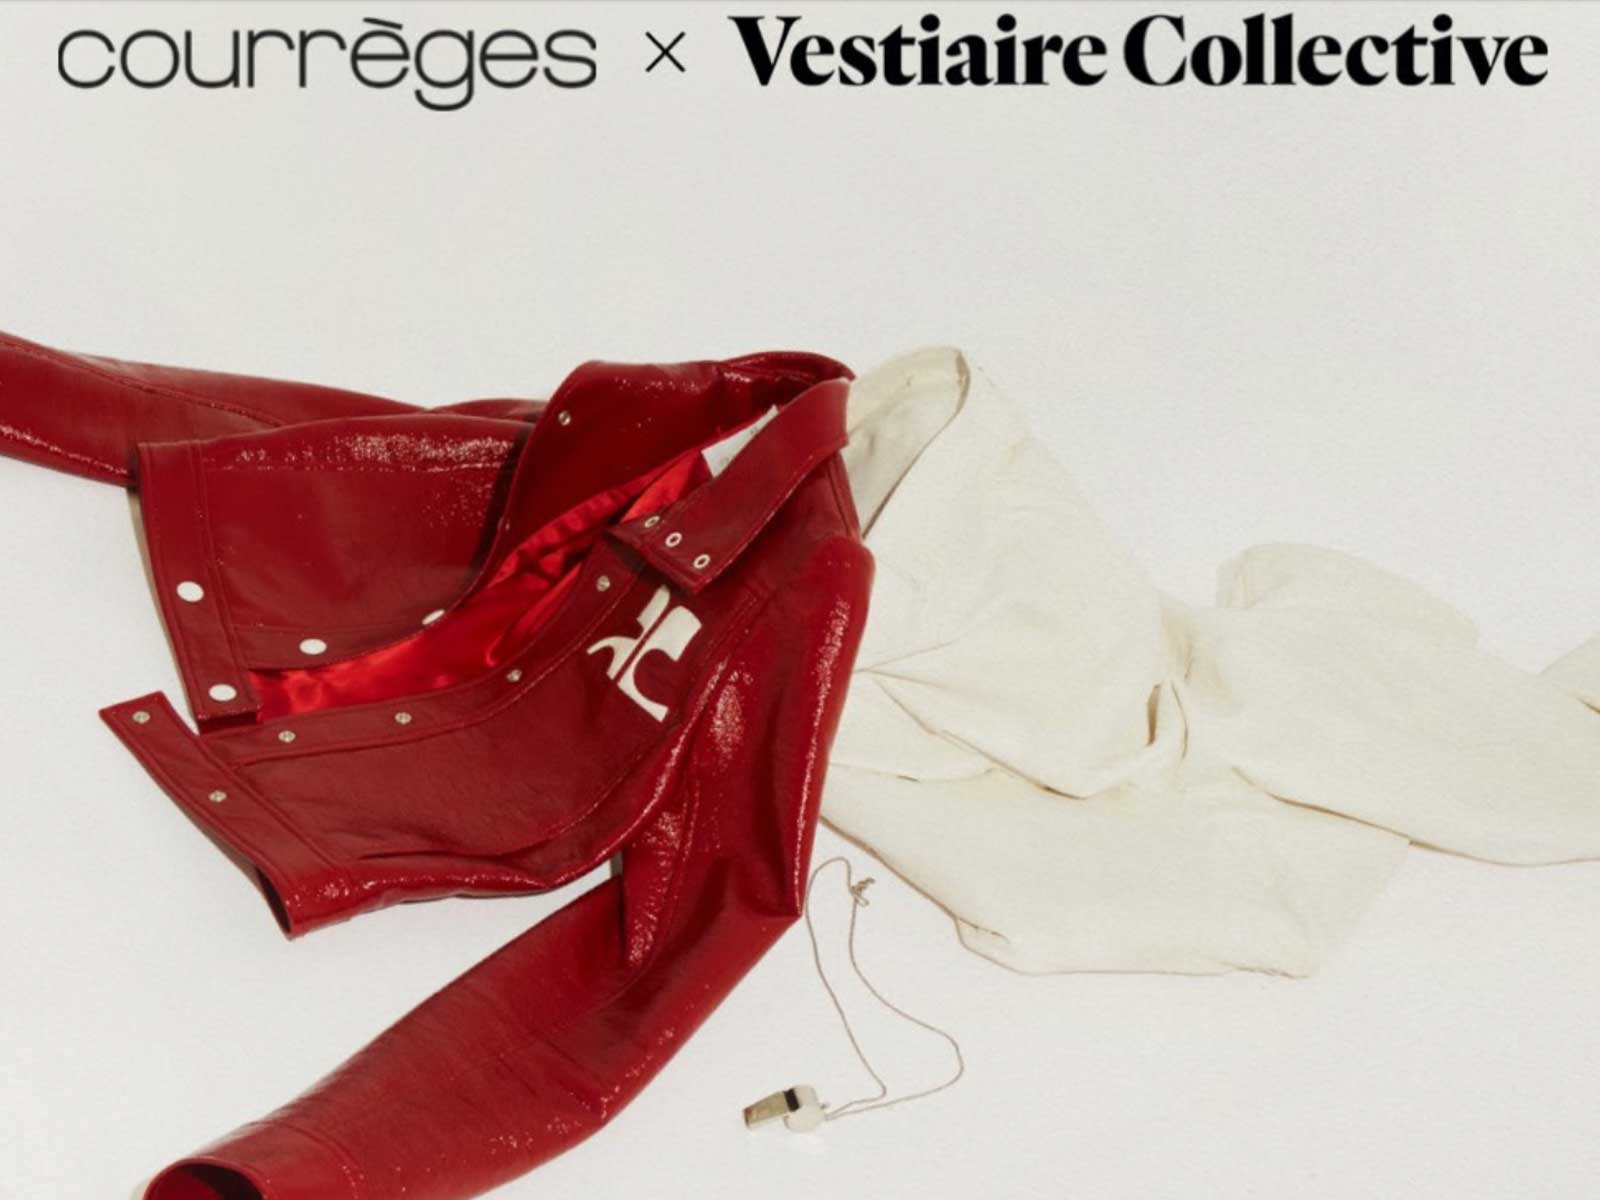 Vestiaire Collective y Courrèges se unen para encontrar las mejores piezas de segunda mano